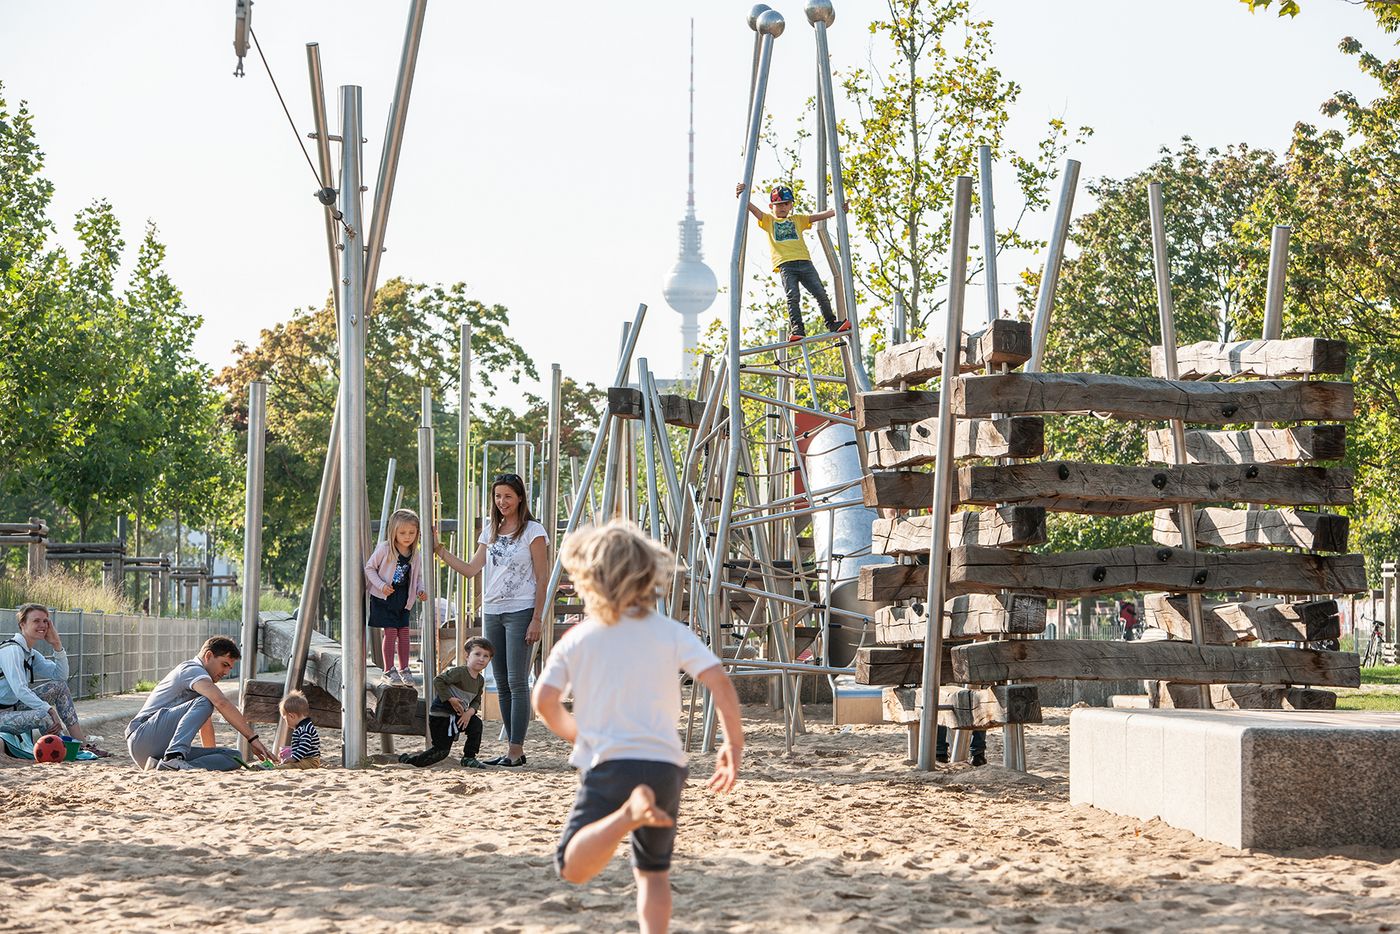 Das Bild zeigt Kinder auf dem Spielplatz im Mauerpark, im Hintergrund ist der Fernsehturm zu sehen.